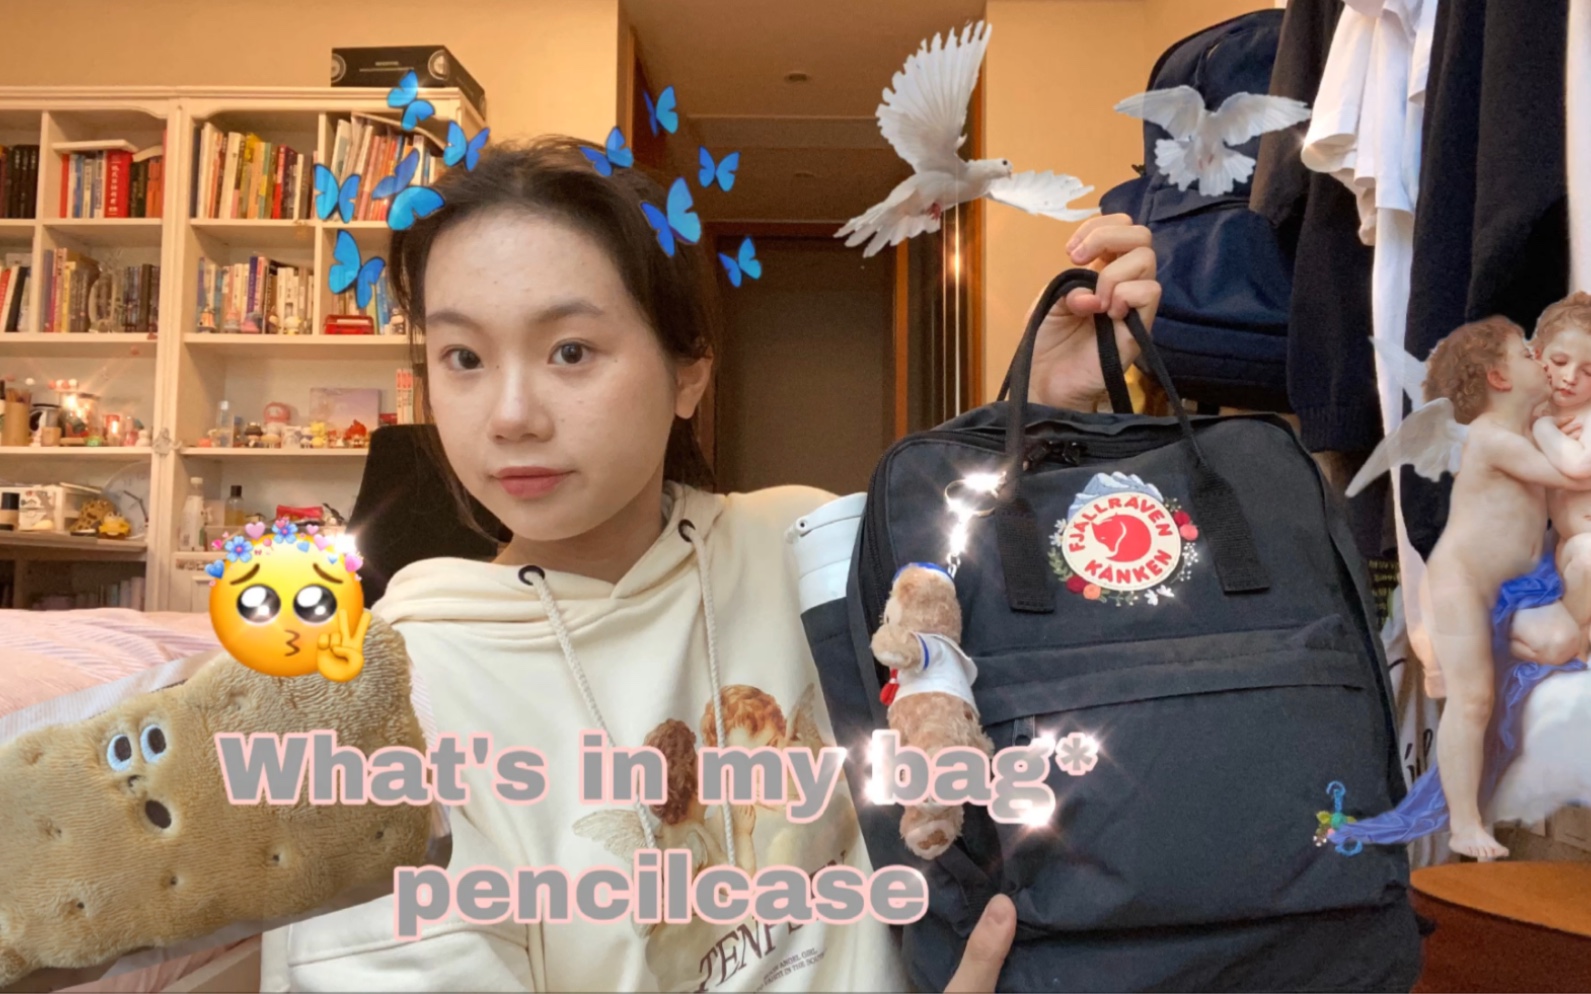 ｛翻包记｝初中生书包/笔盒里有什么:)what’s in my bag /pencil case ?